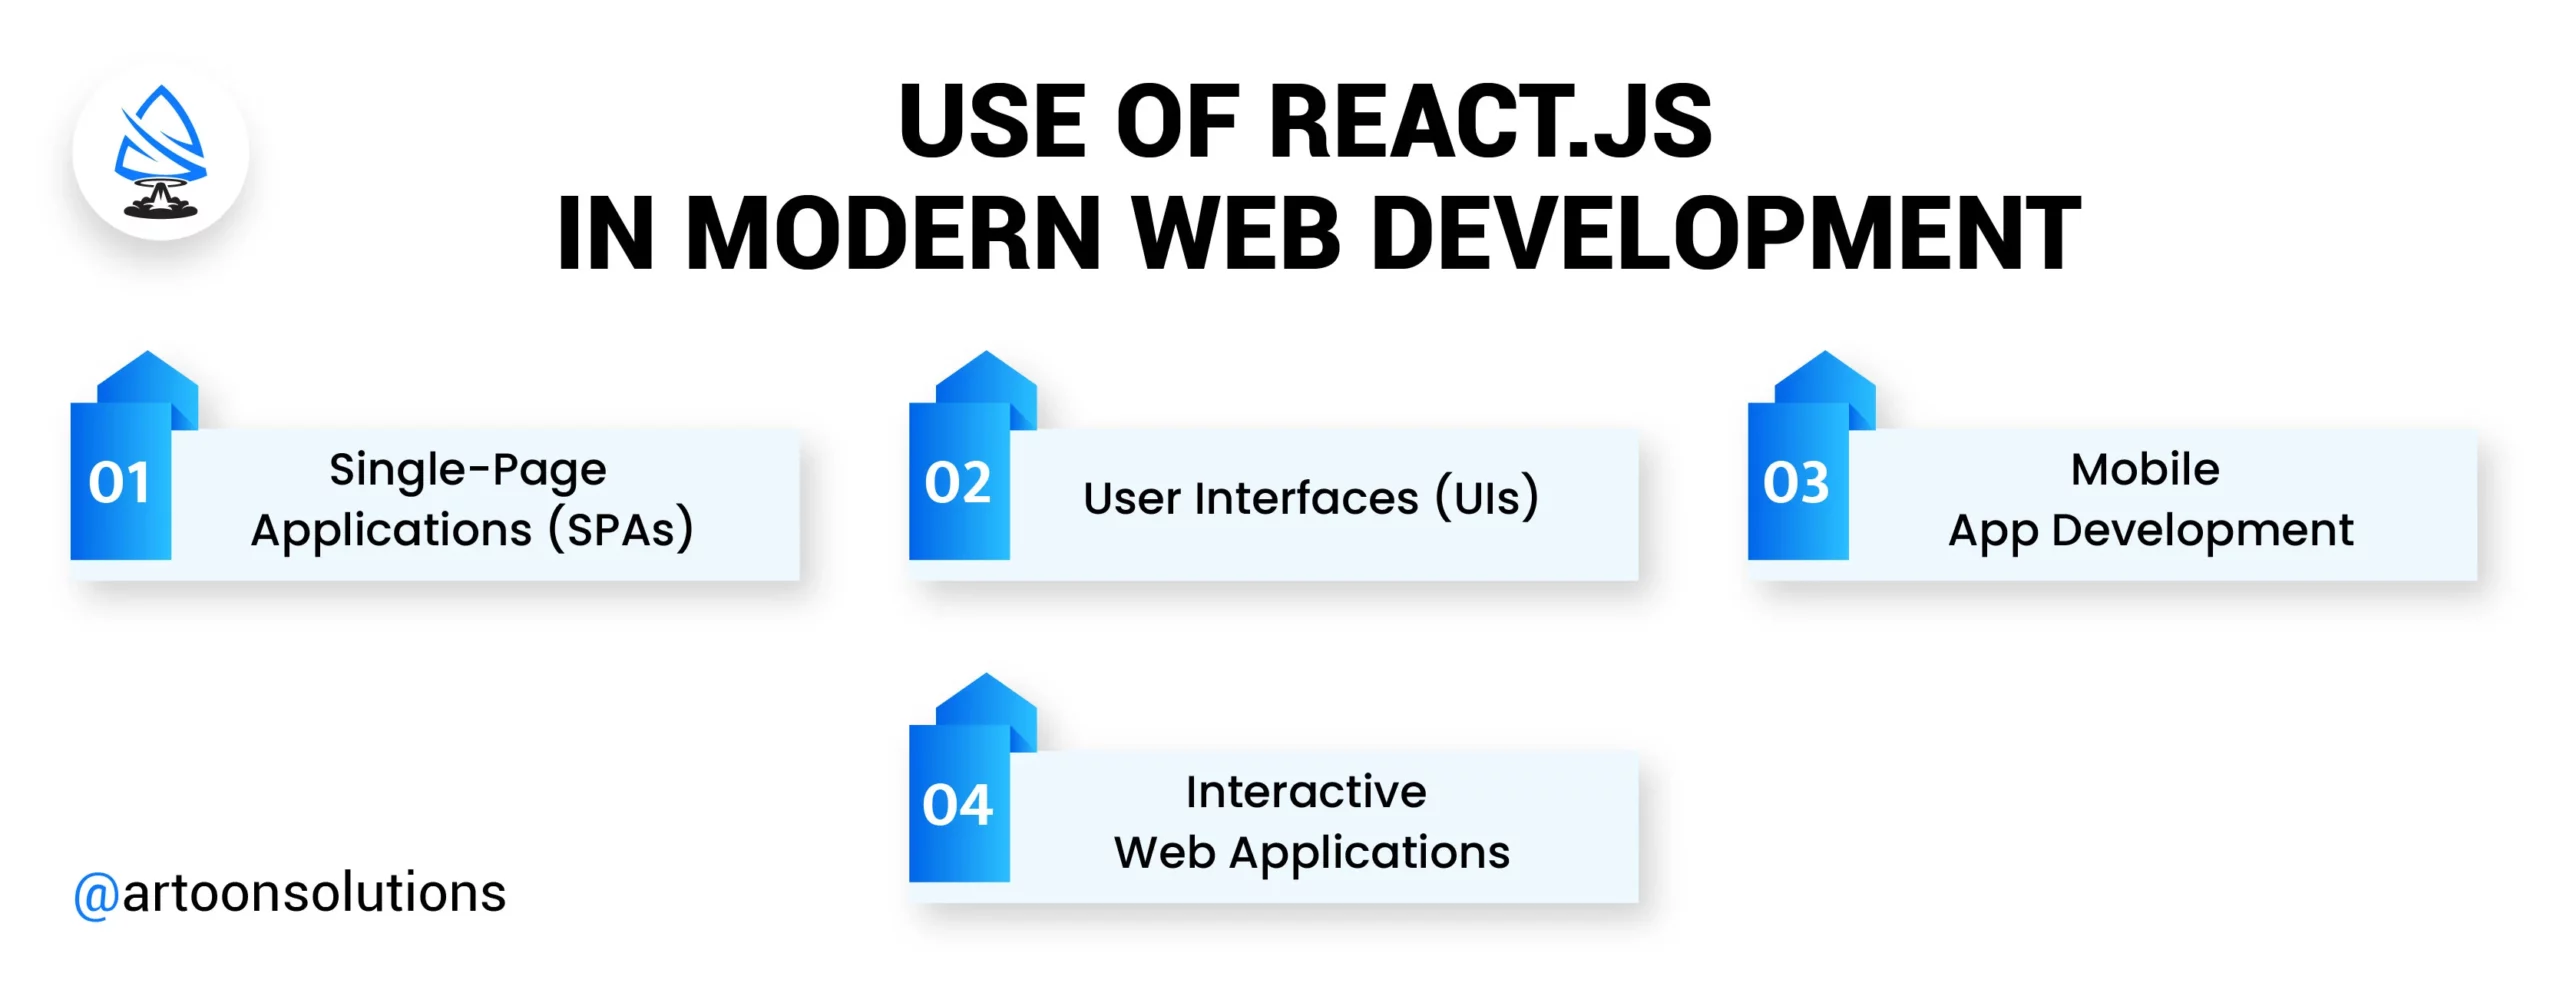 Use of React.js in Modern Web Development